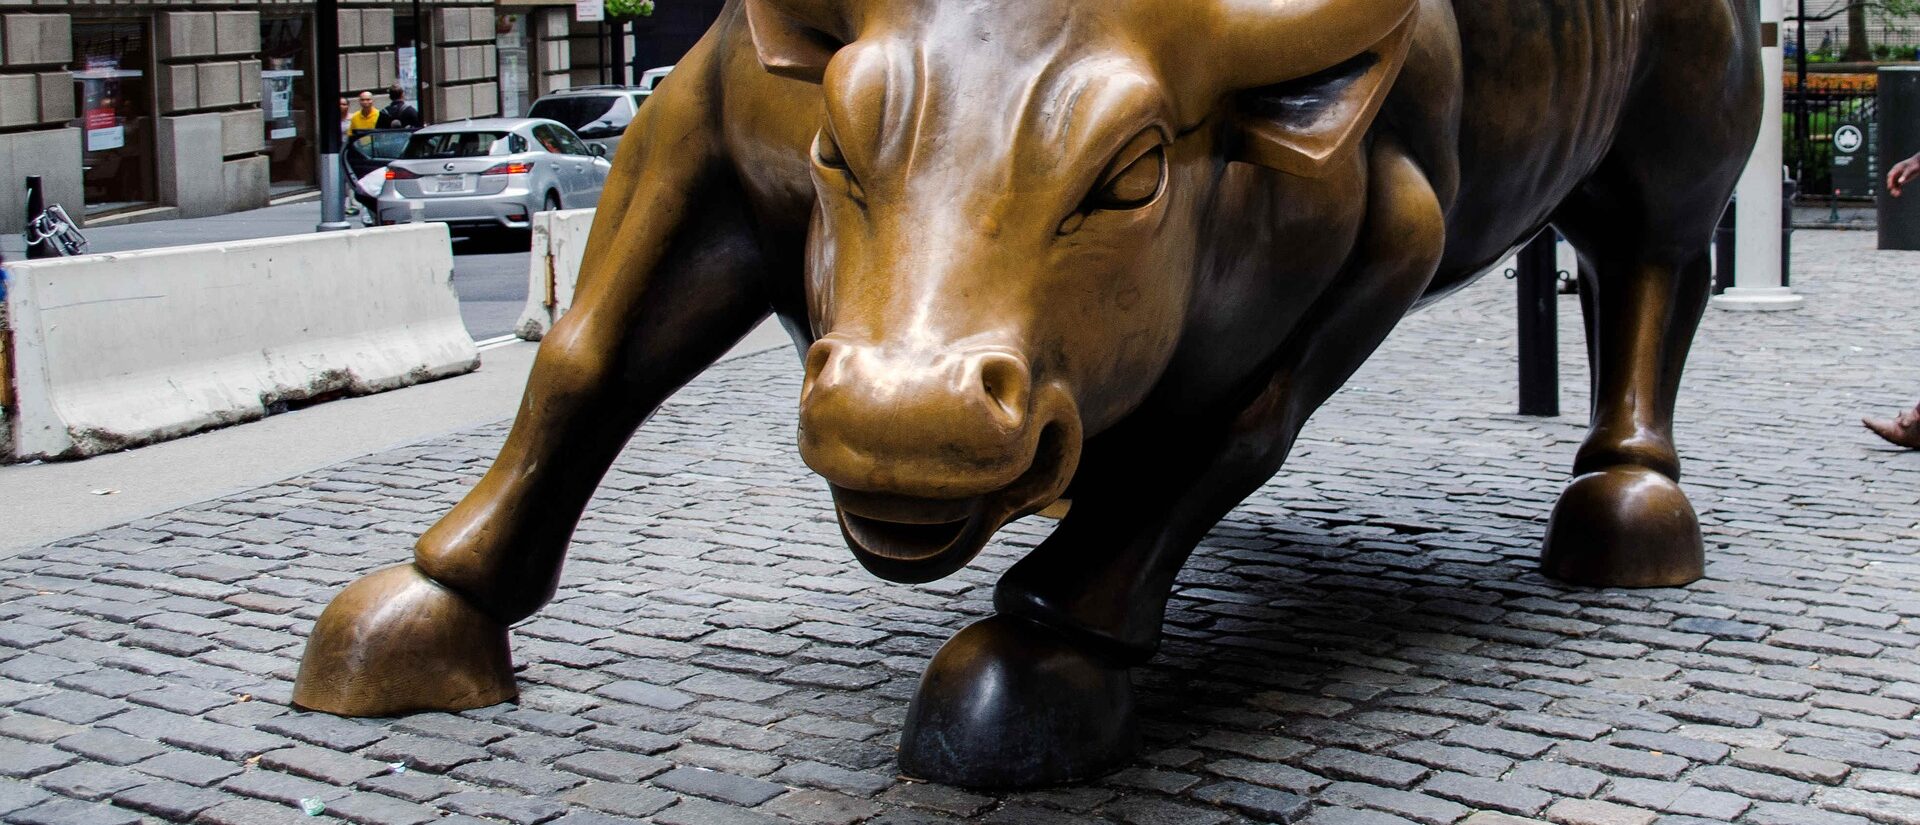 Pour le pape, la finance mondiale doit être encadrée | photo: taureau de Wall Street © Alexander Naumann/Pixabay